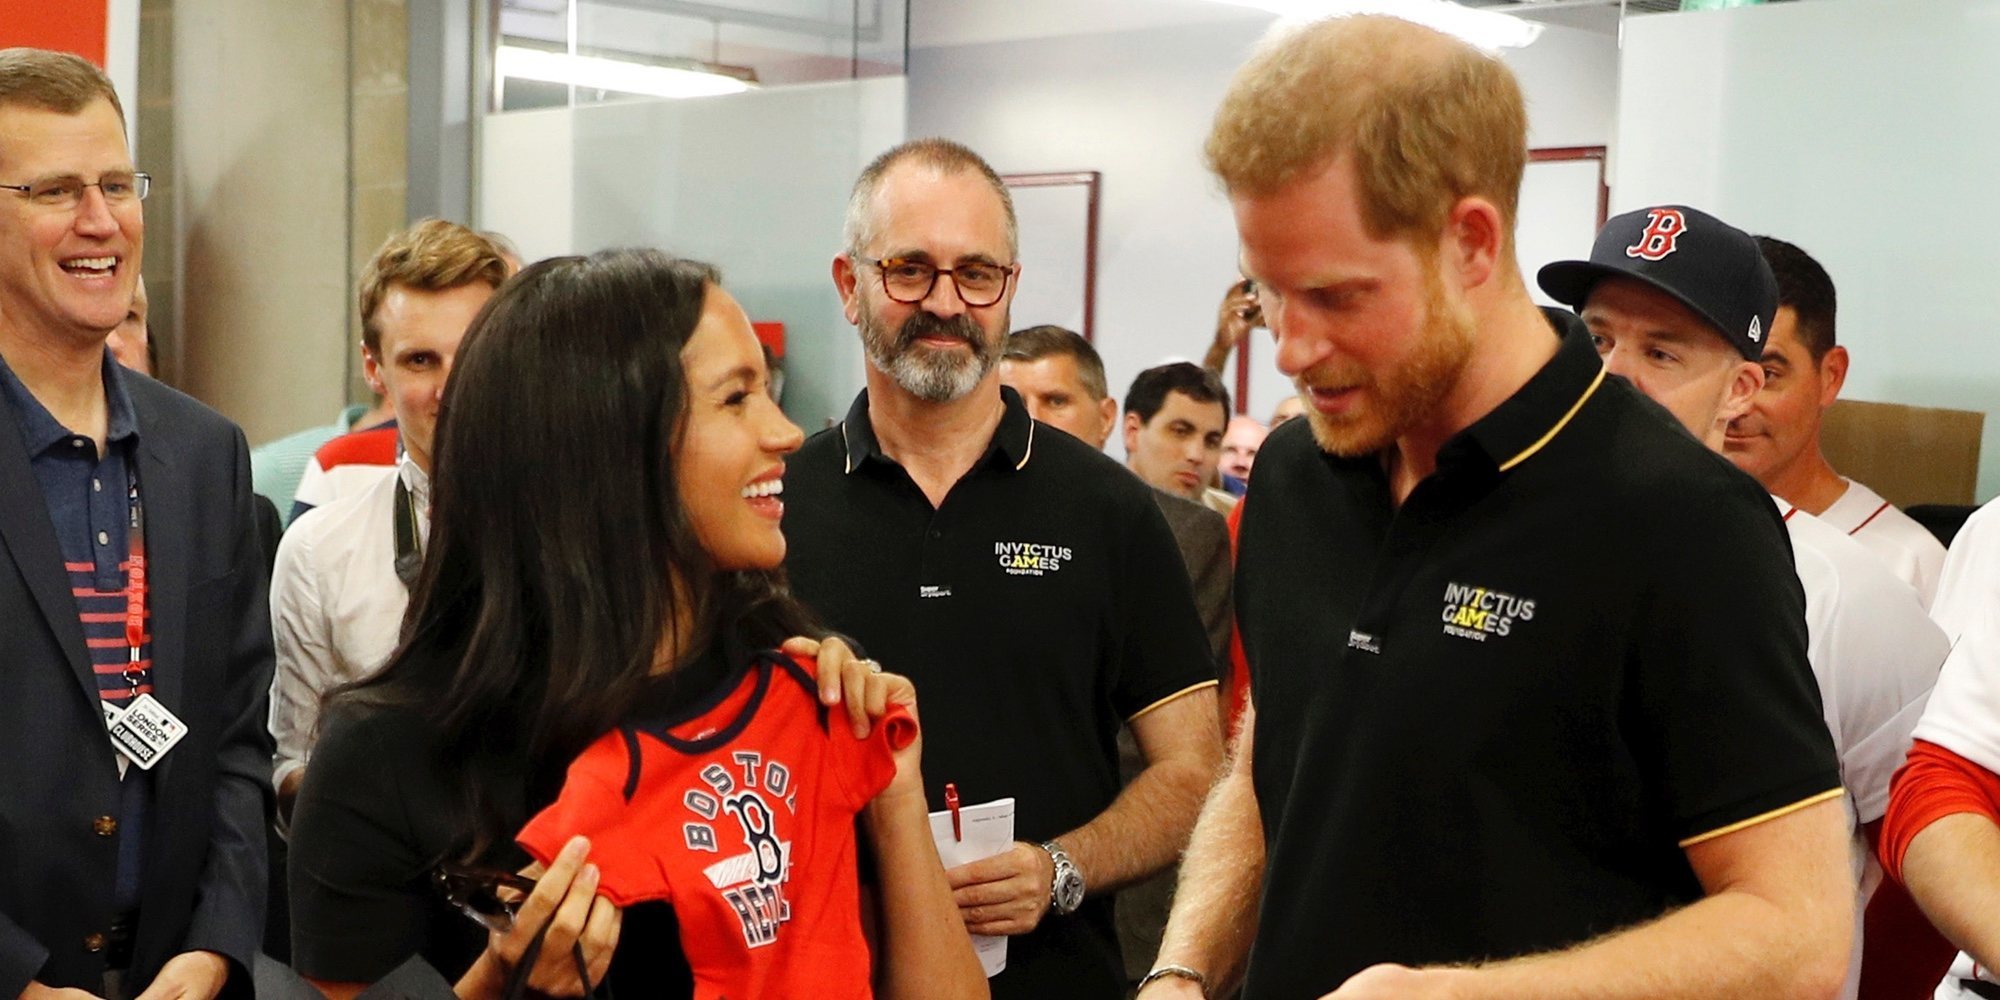 Meghan Markle reaparece por sorpresa con el Príncipe Harry en un partido de béisbol entre regalos y sonrisas